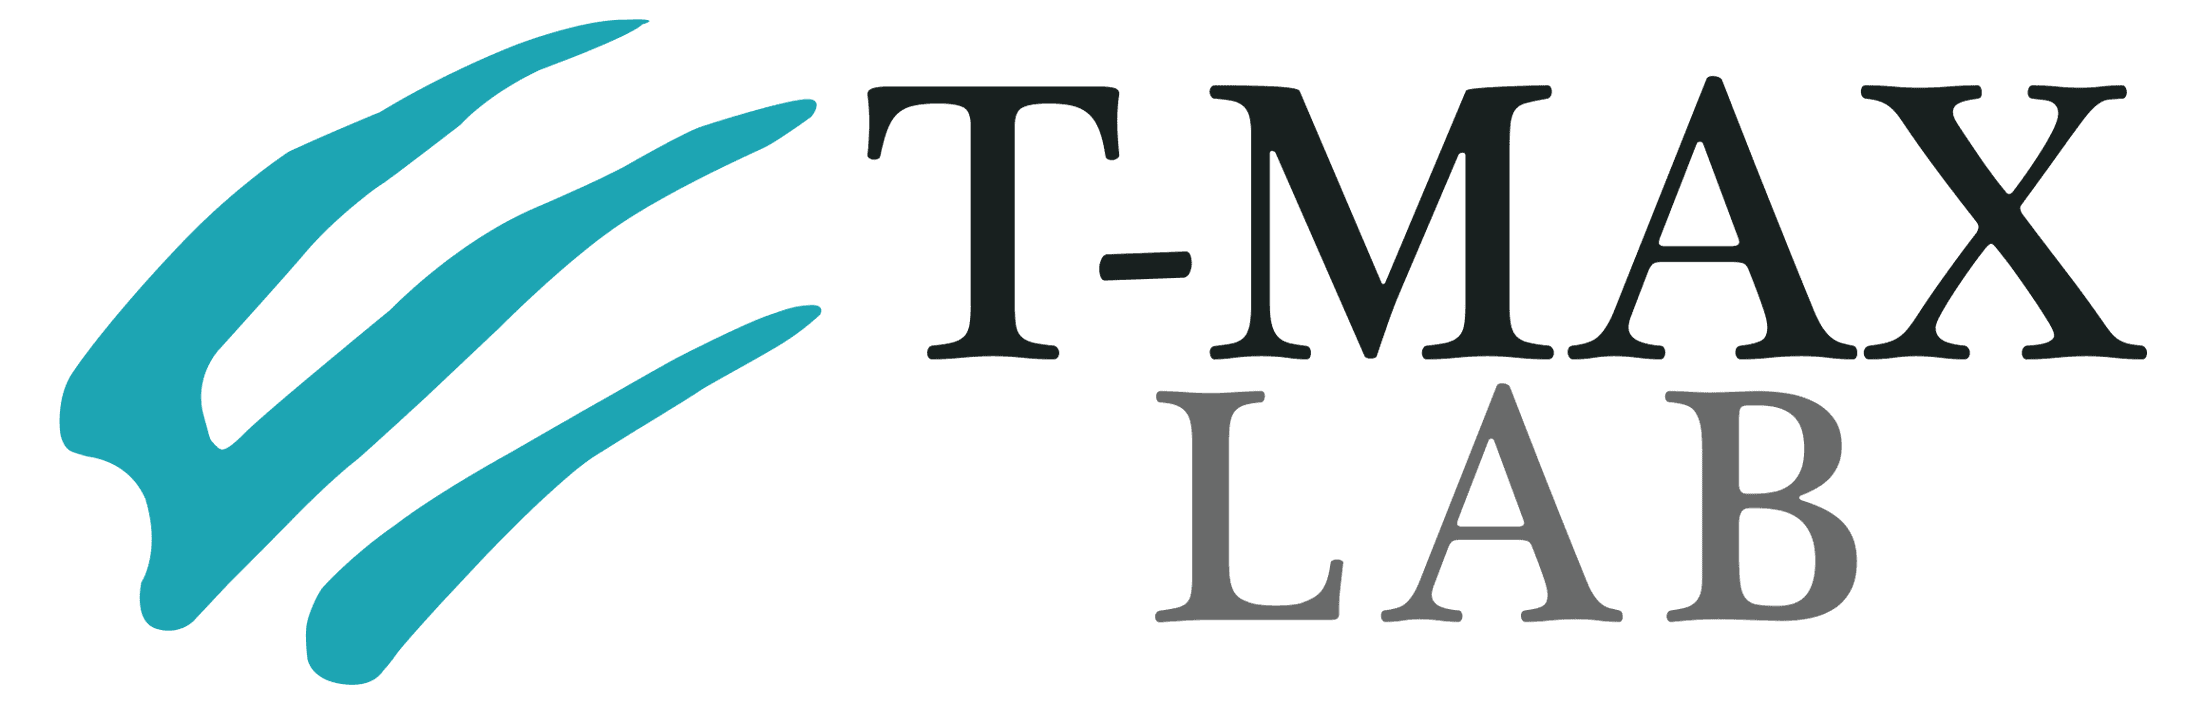 Tmax-lab-logo-RGB